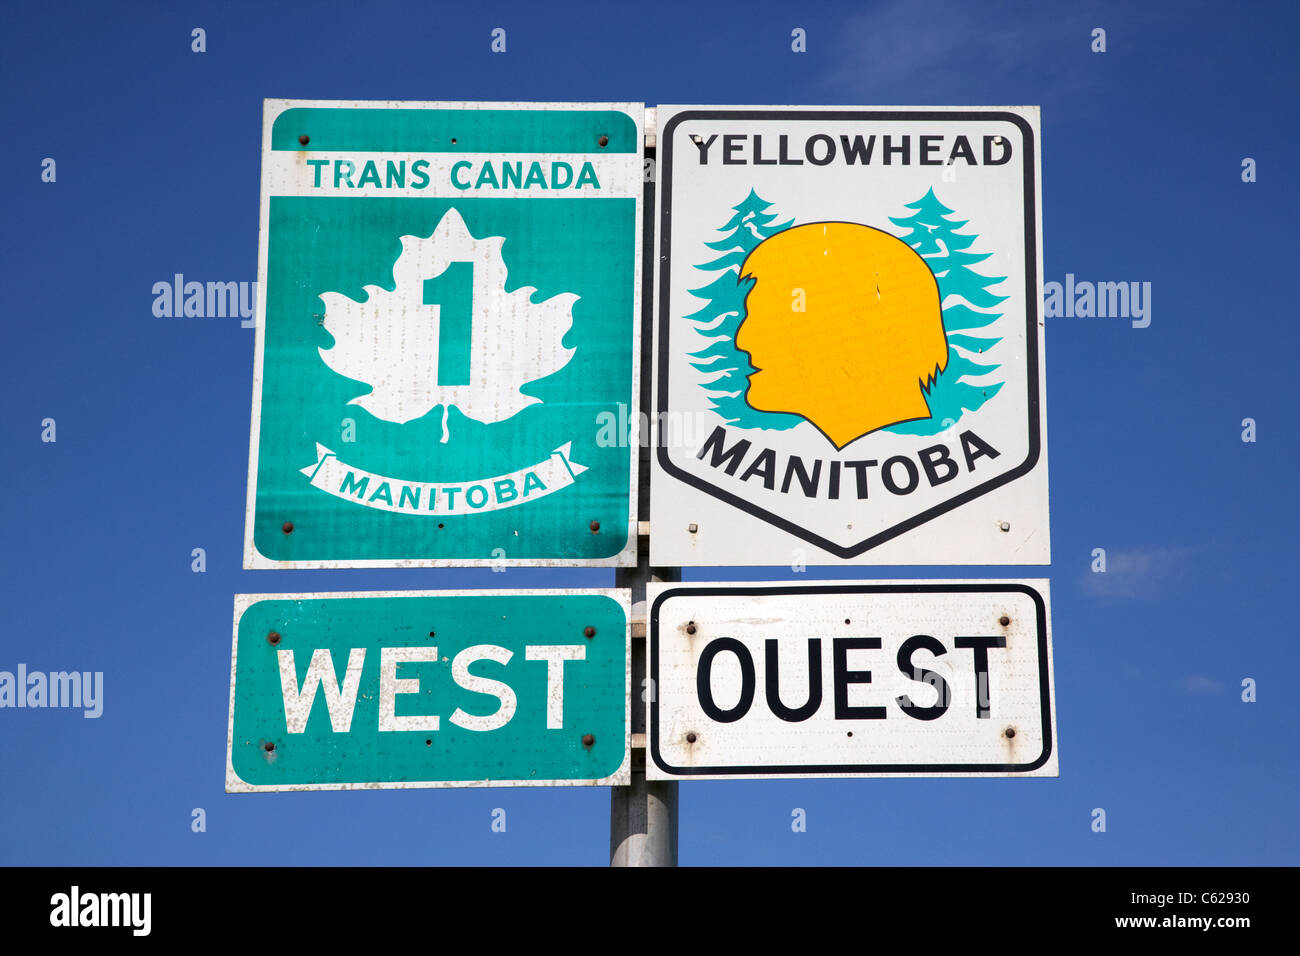 Indications pour l'autoroute Trans Canada 1 et route de Yellowhead dans Manitoba canada Banque D'Images